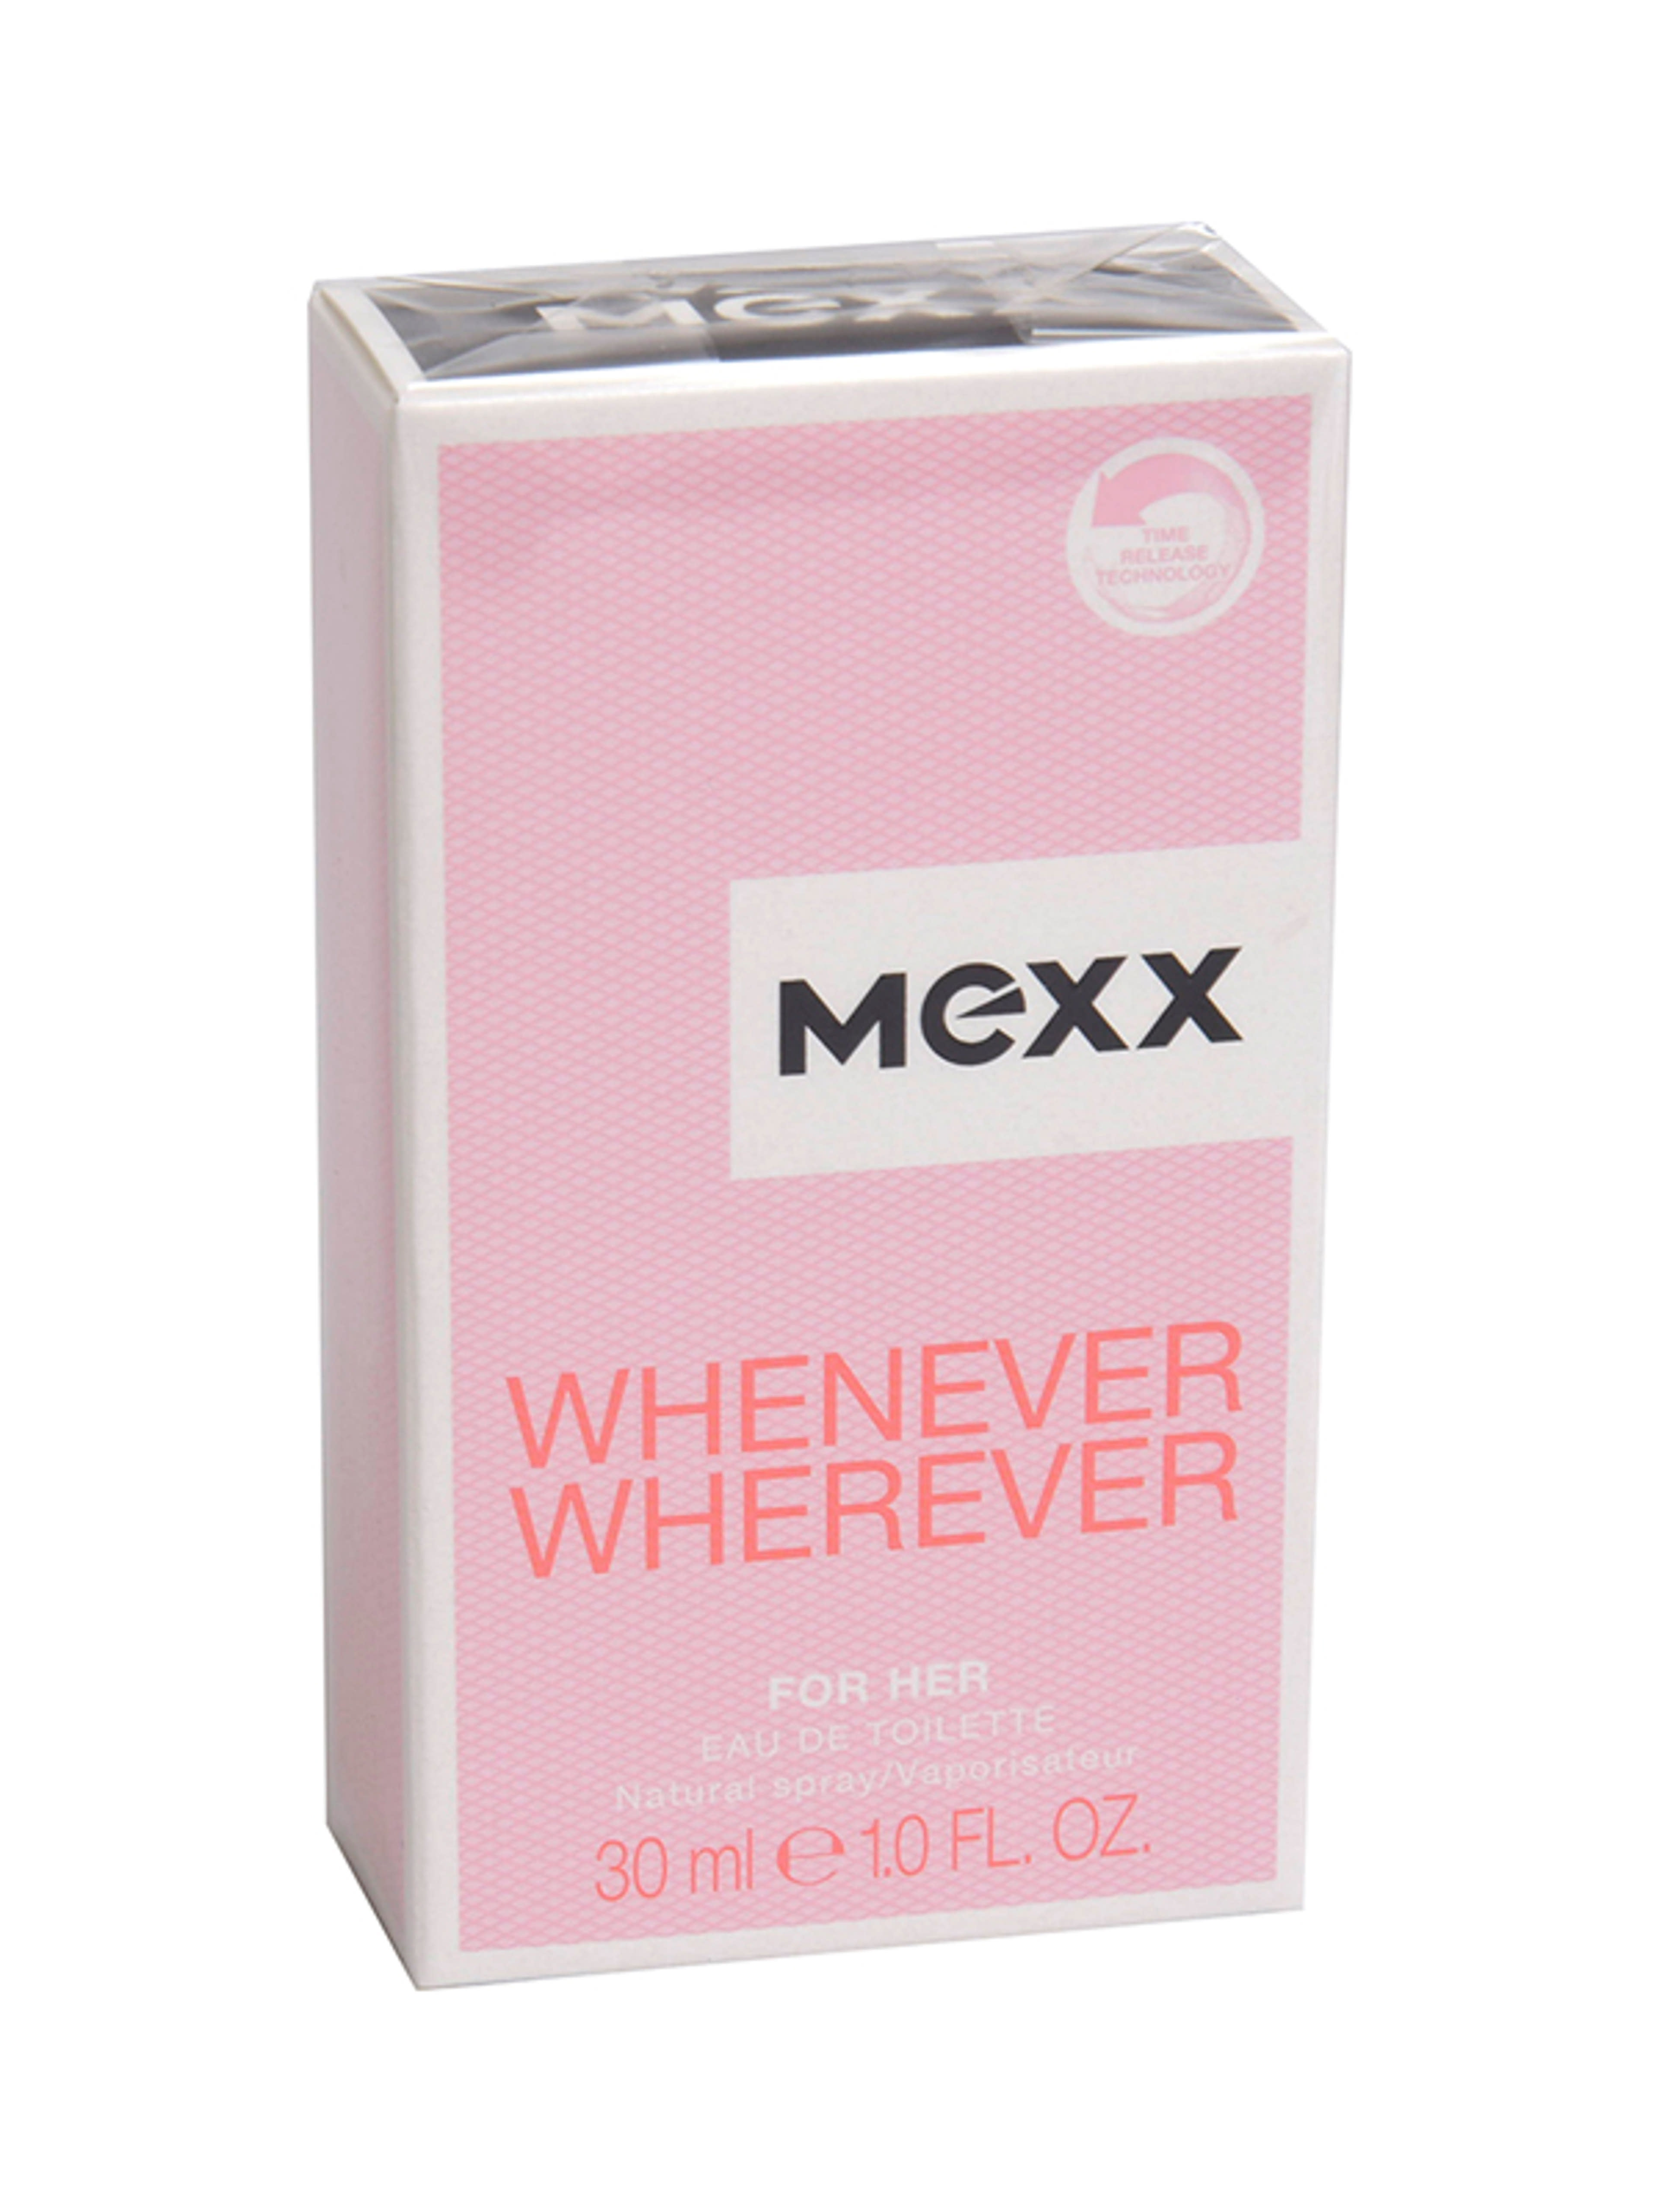 Mexx whenever wherever női eau de toilette - 30 ml